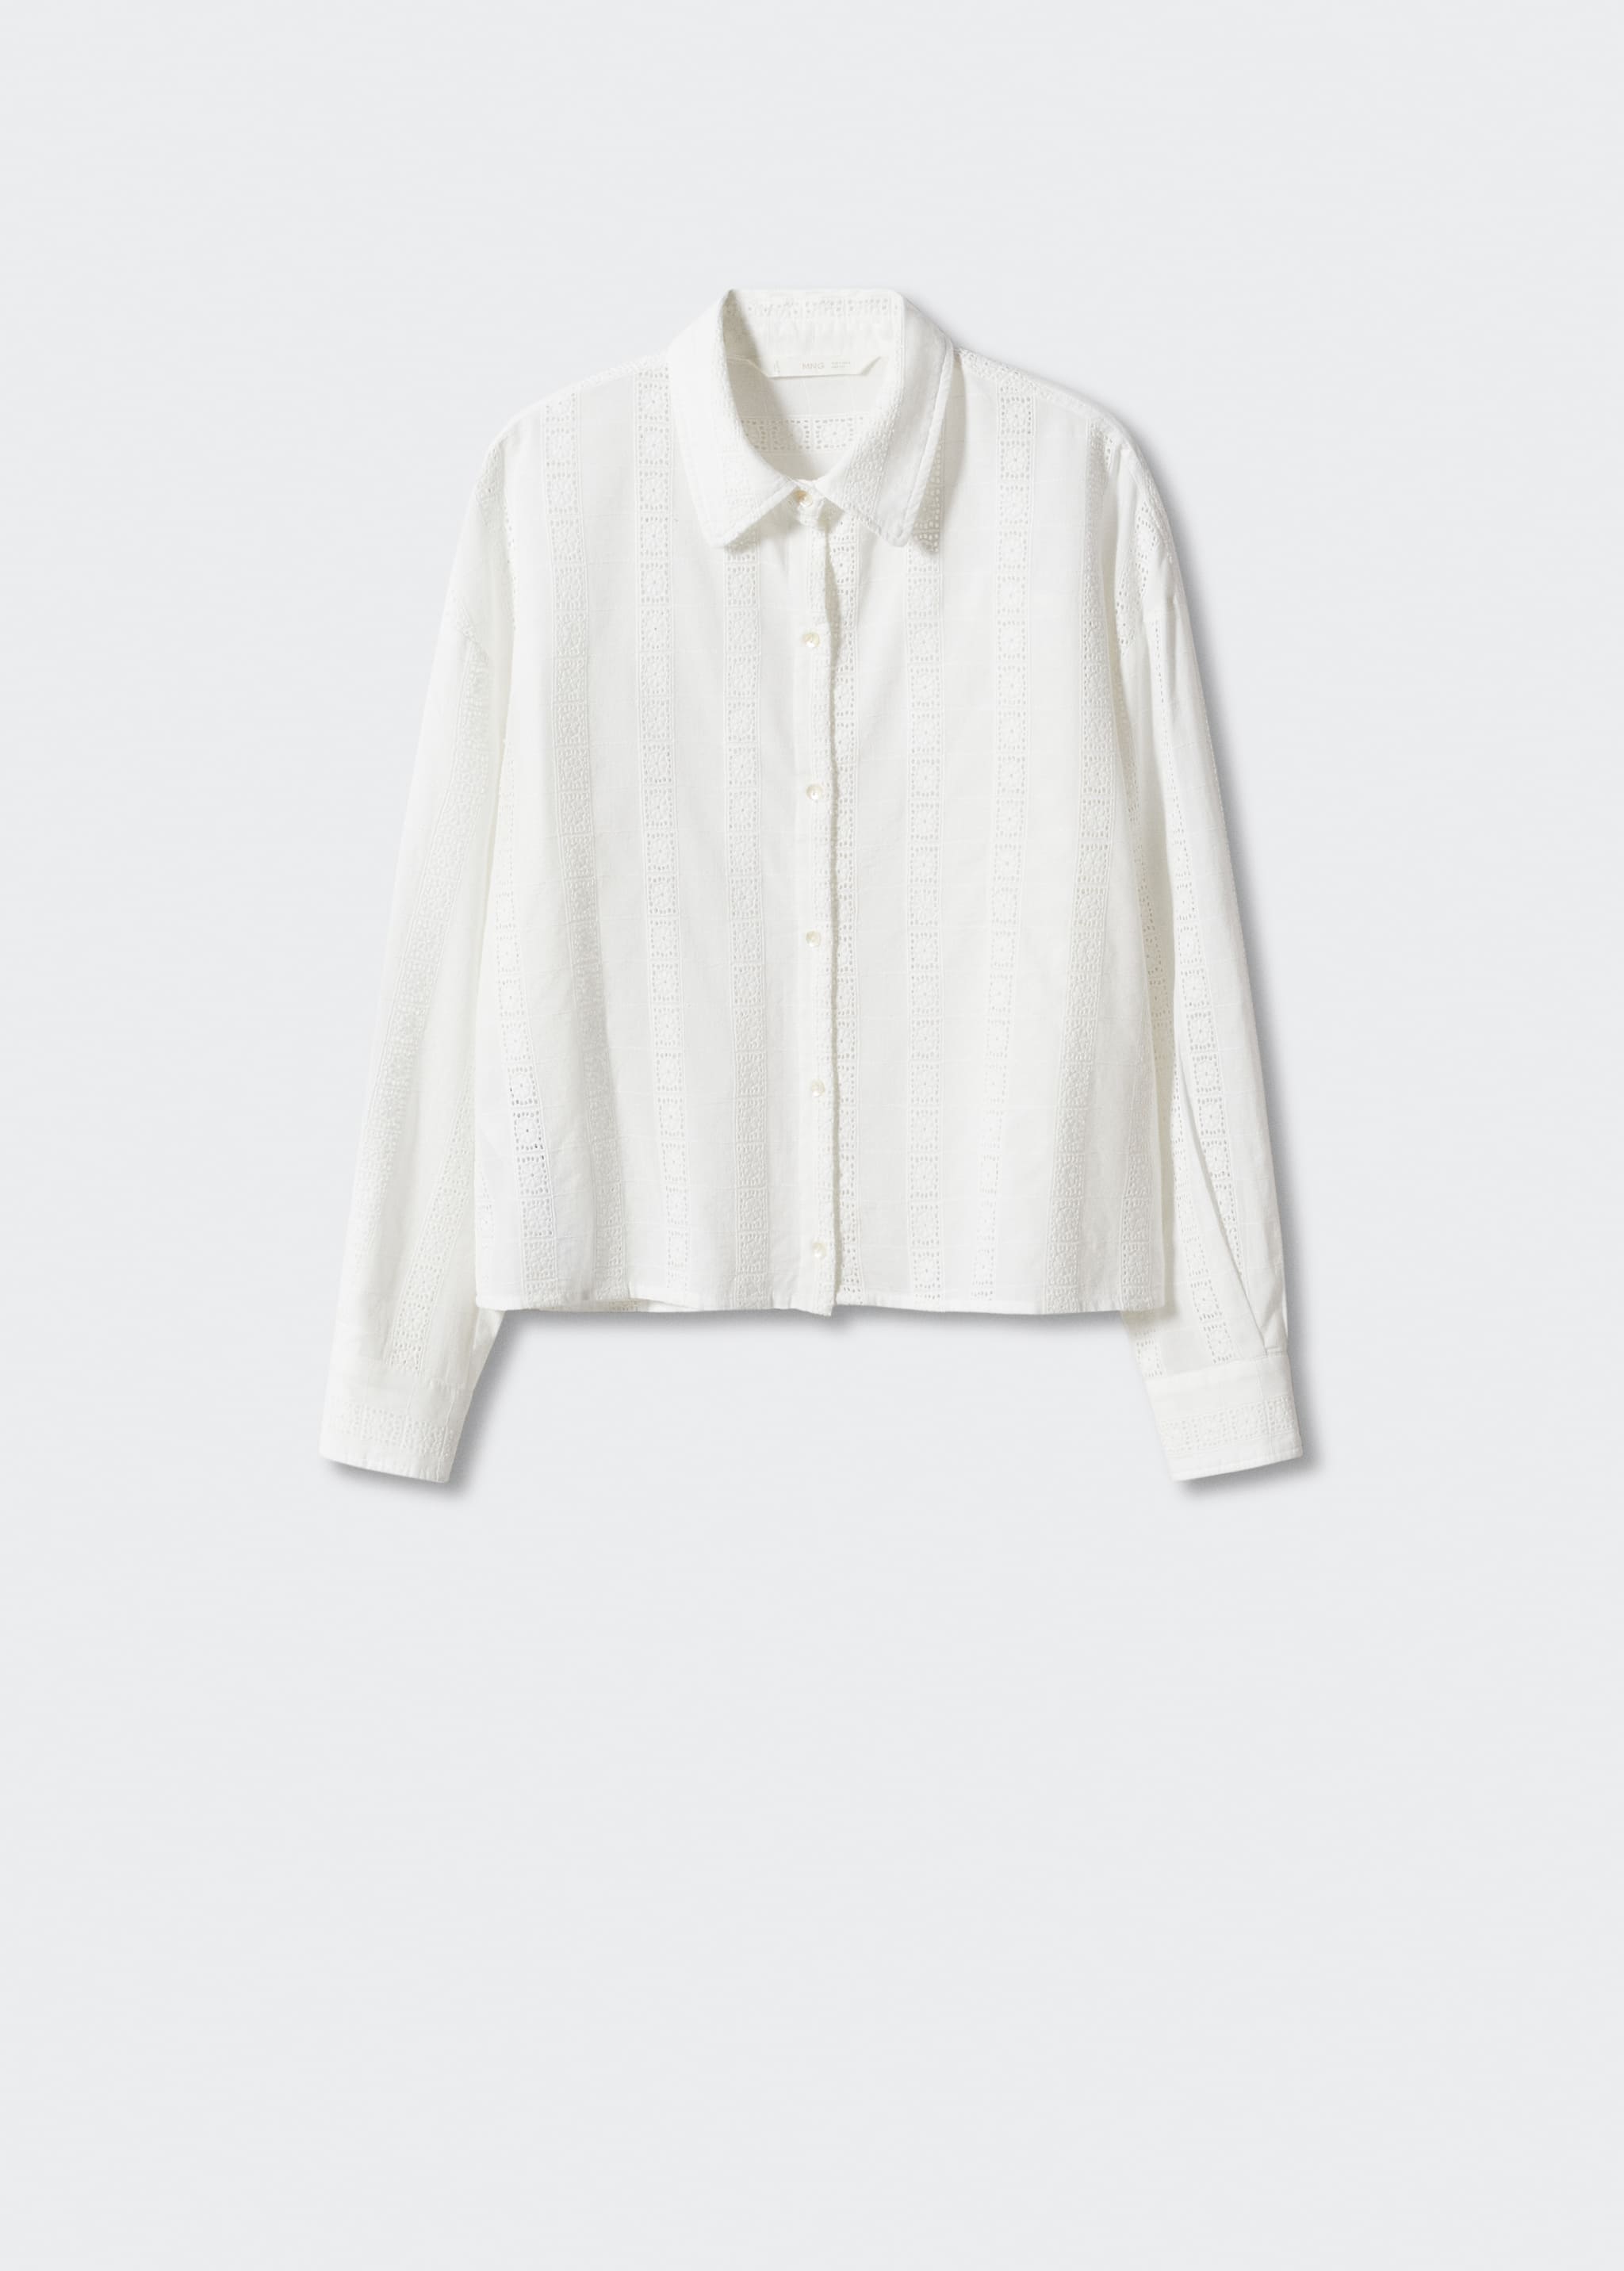 Camisa algodón bordada - Artículo sin modelo